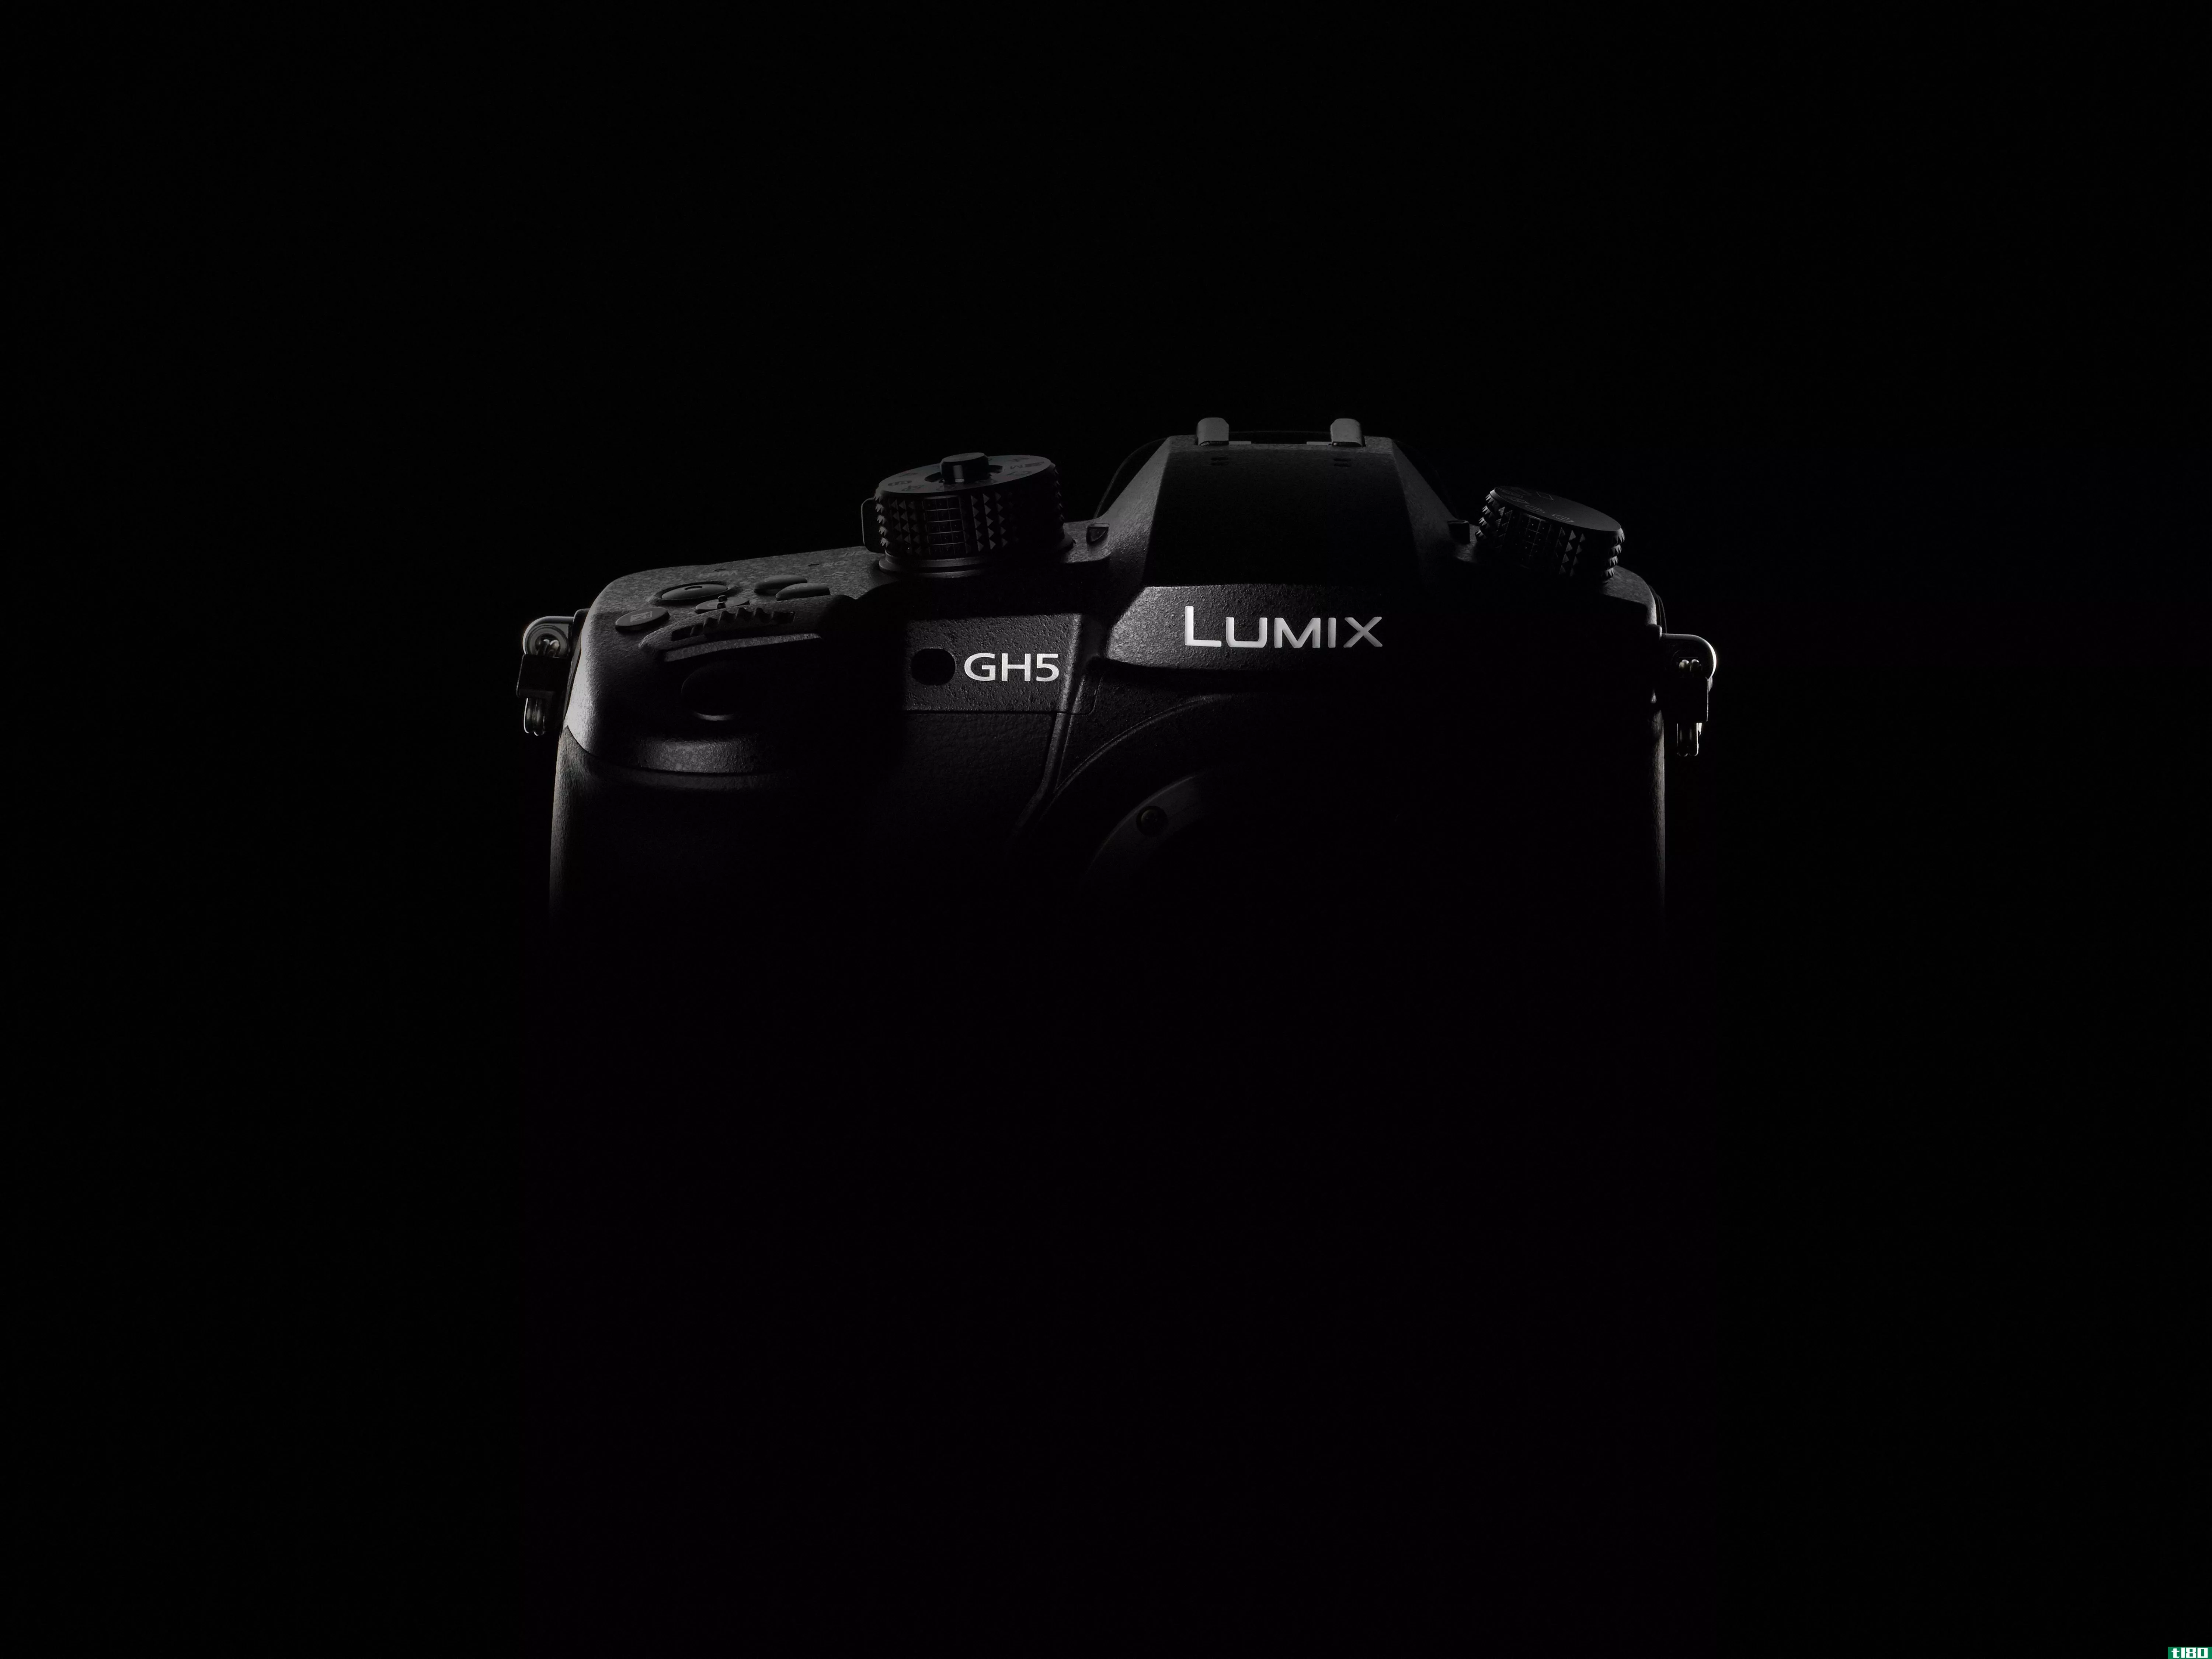 松下的lumixgh5可以拍摄4k的60p视频和6k的静像